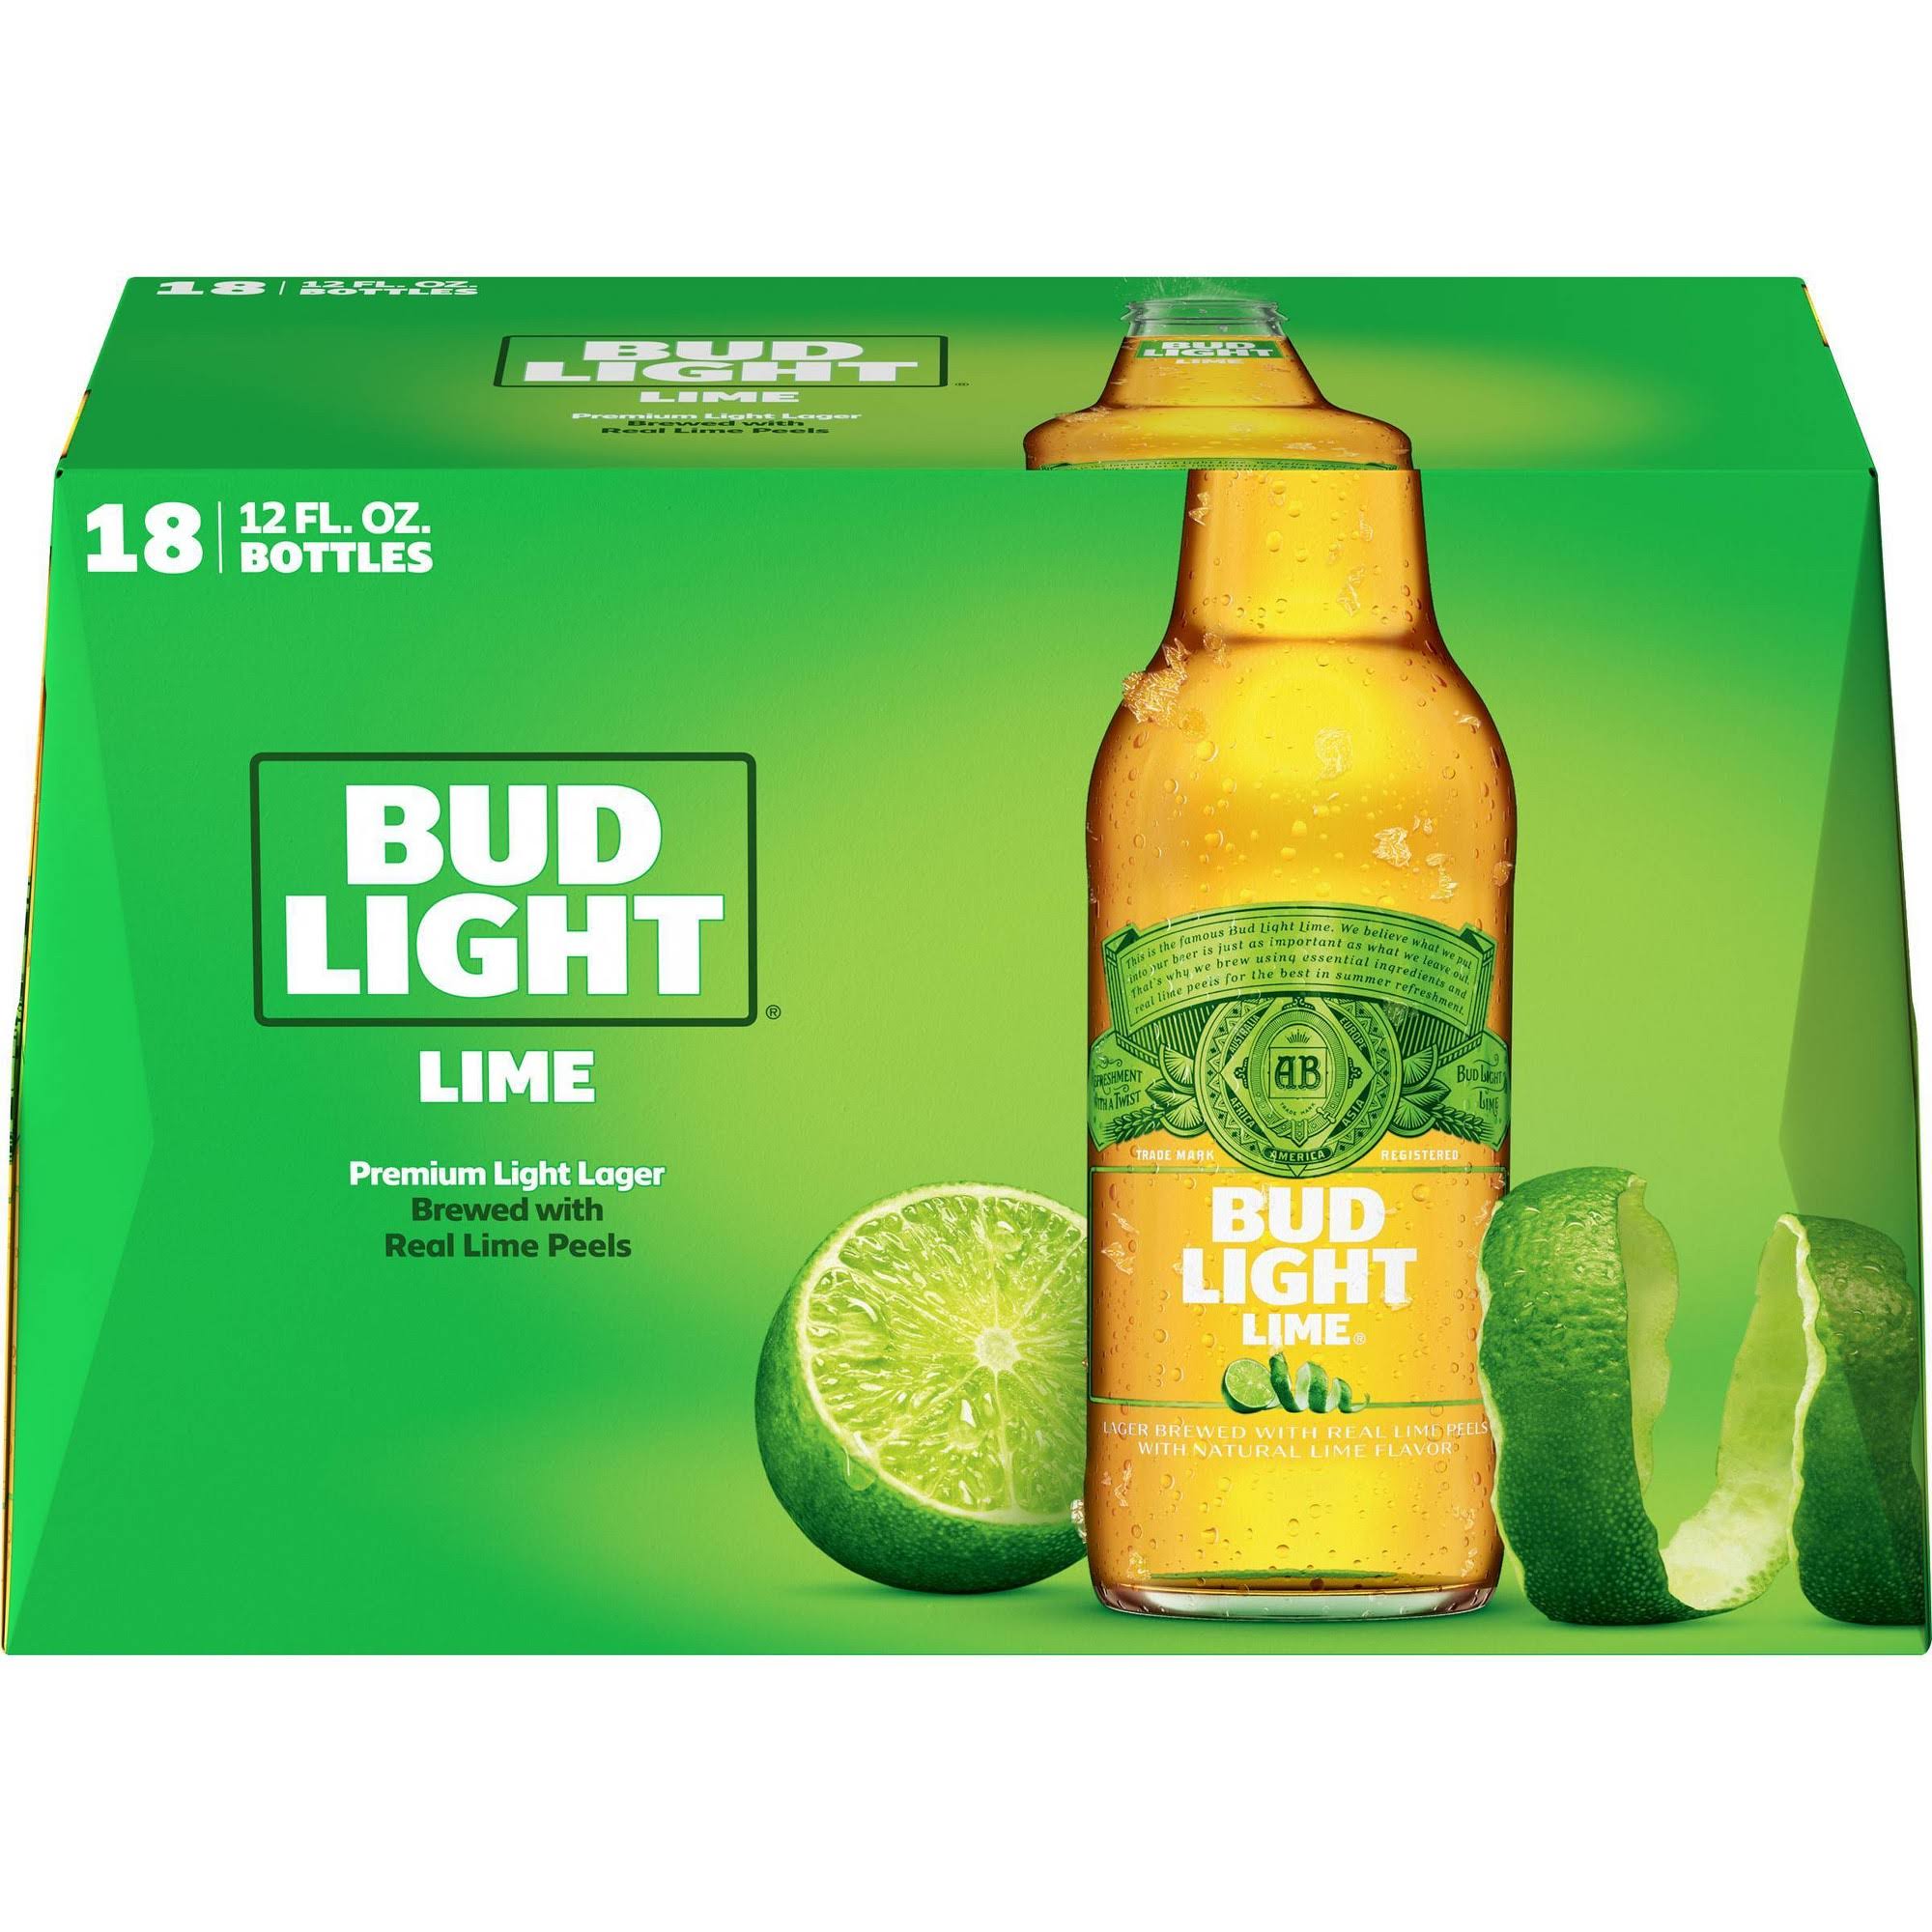 Bud Light Beer, Lager, Premium Light, Lime - 18 pack, 12 fl oz bottles